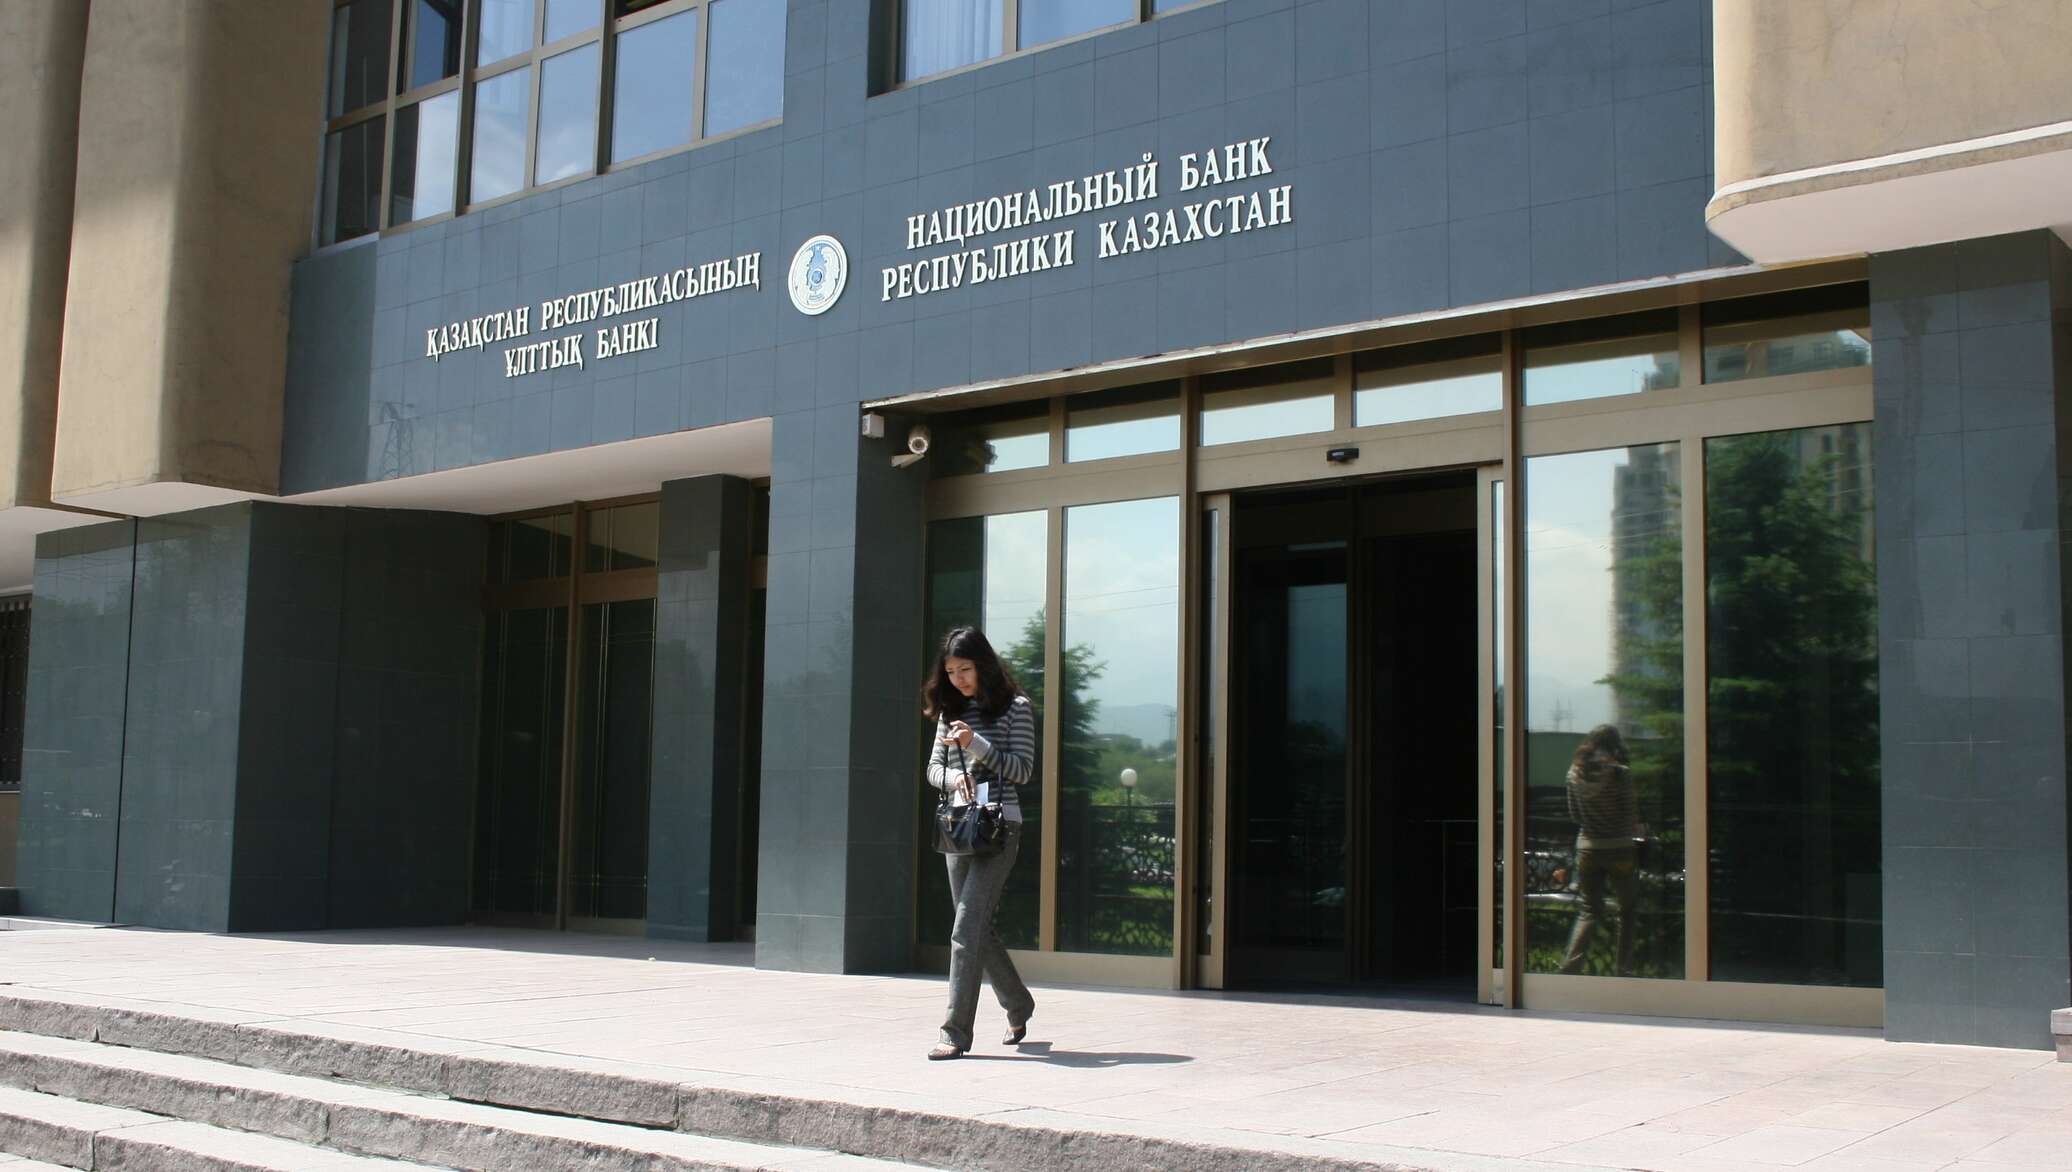 Национальный банк развития